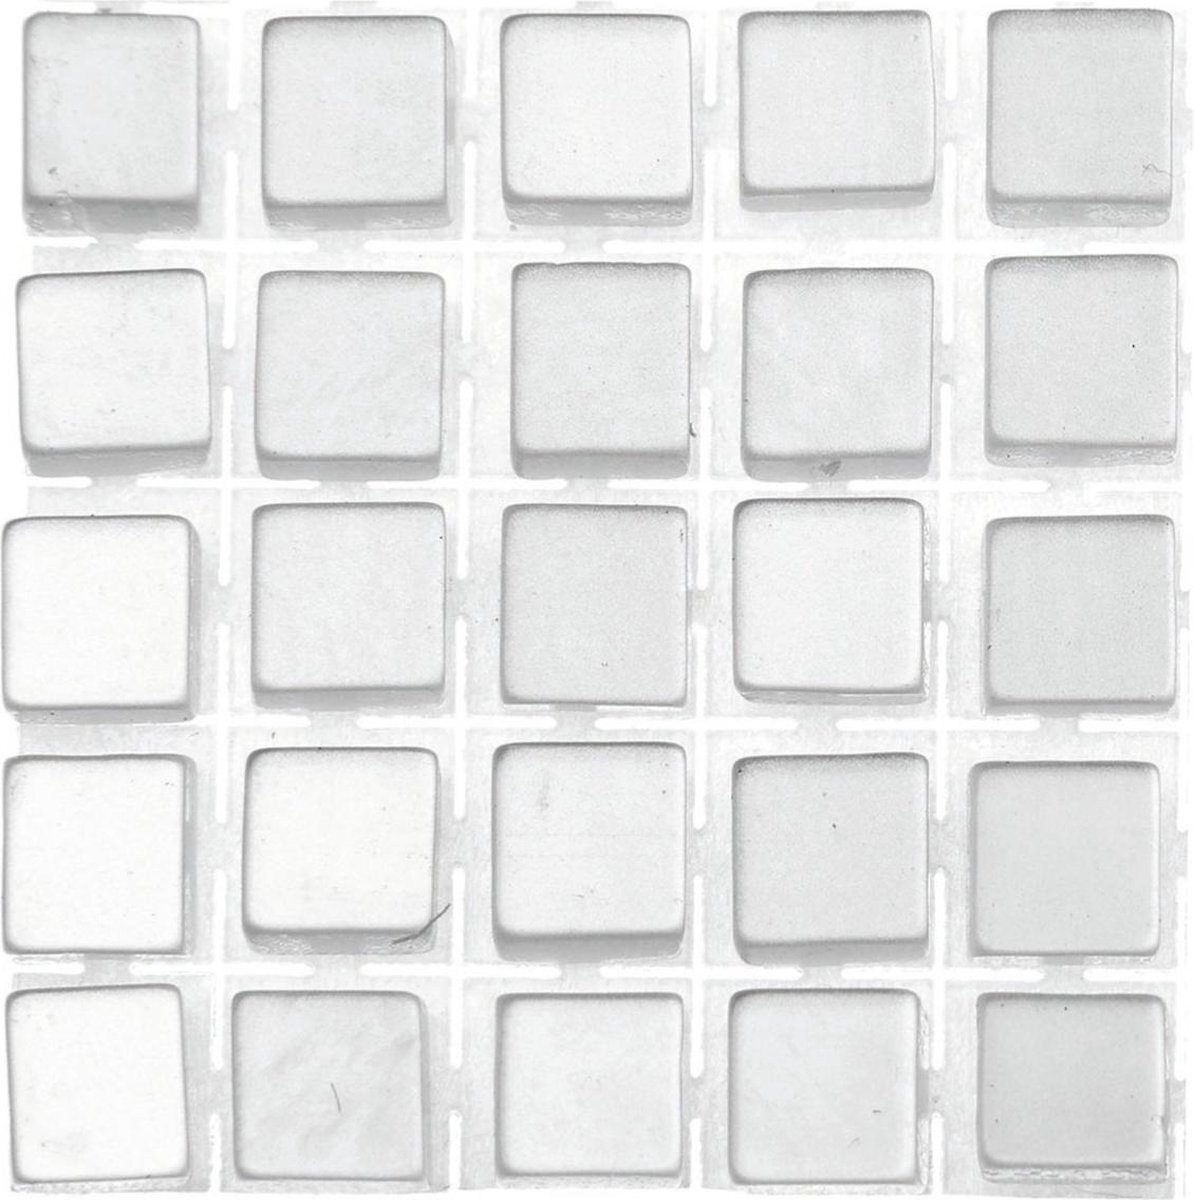 Glorex Hobby 595x stuks mozaieken maken steentjes/tegels kleur grijs met formaat 5 x 5 x 2 mm